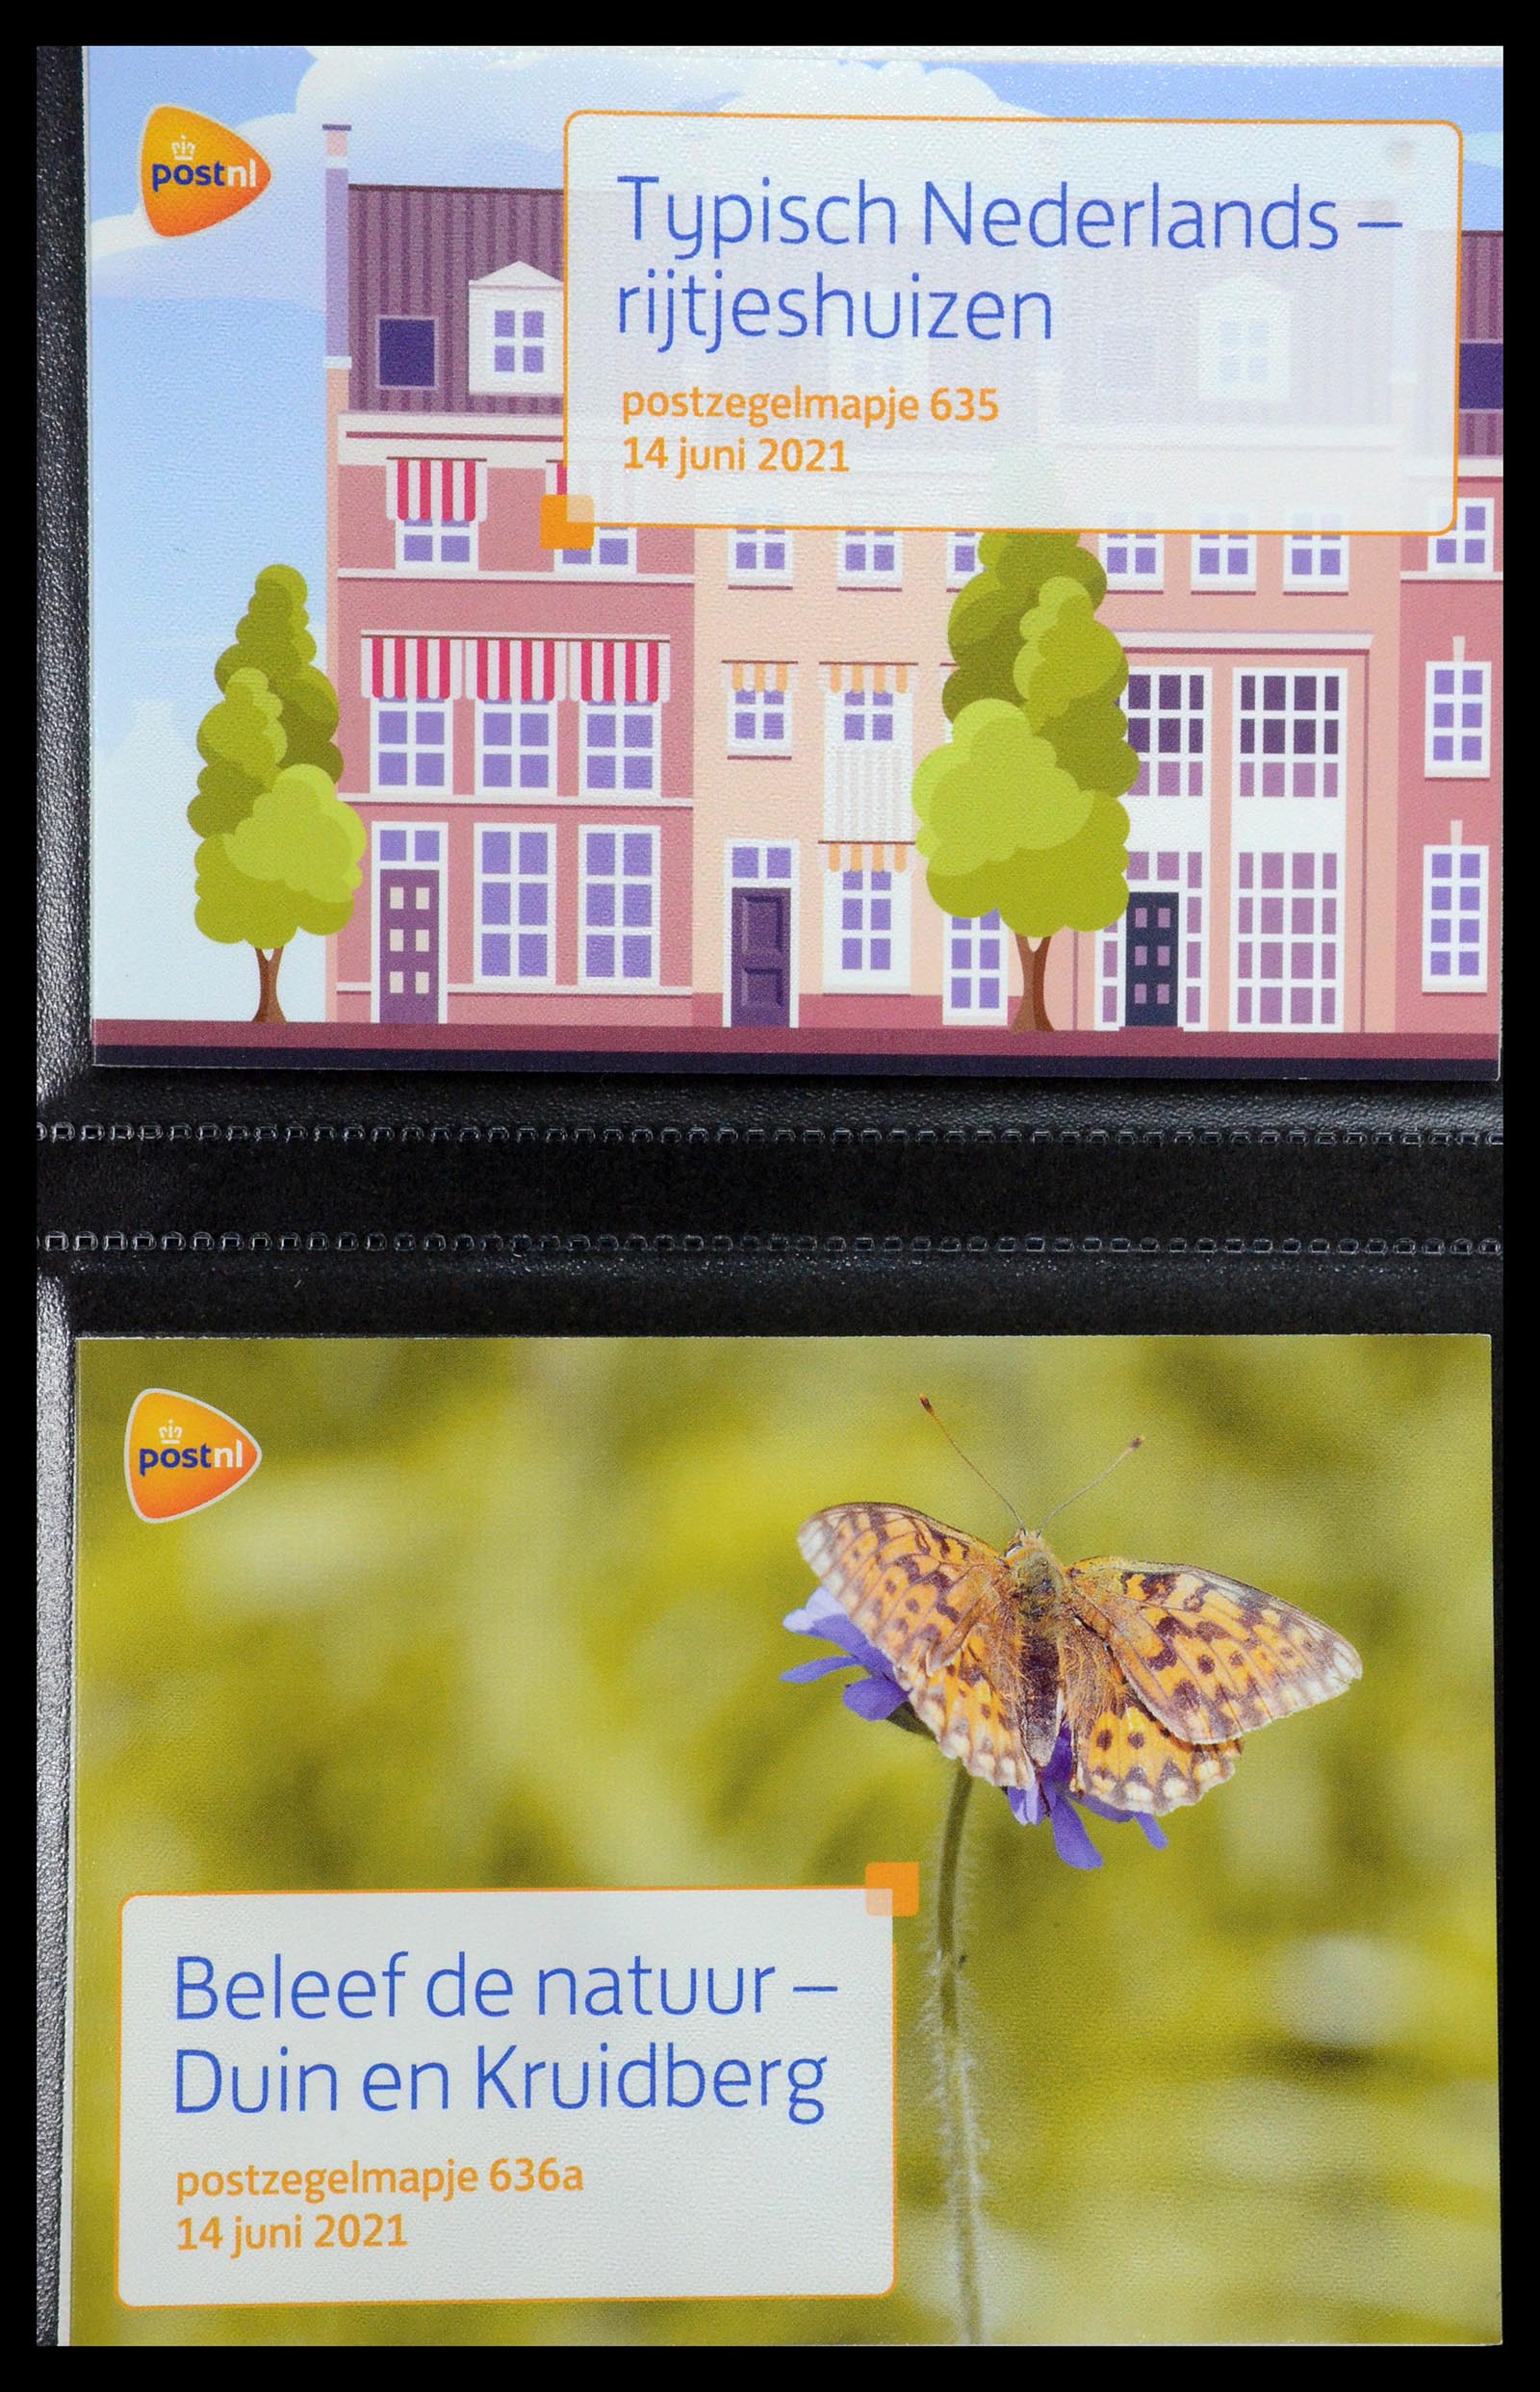 35144 384 - Stamp Collection 35144 Netherlands PTT presentation packs 1982-2021!